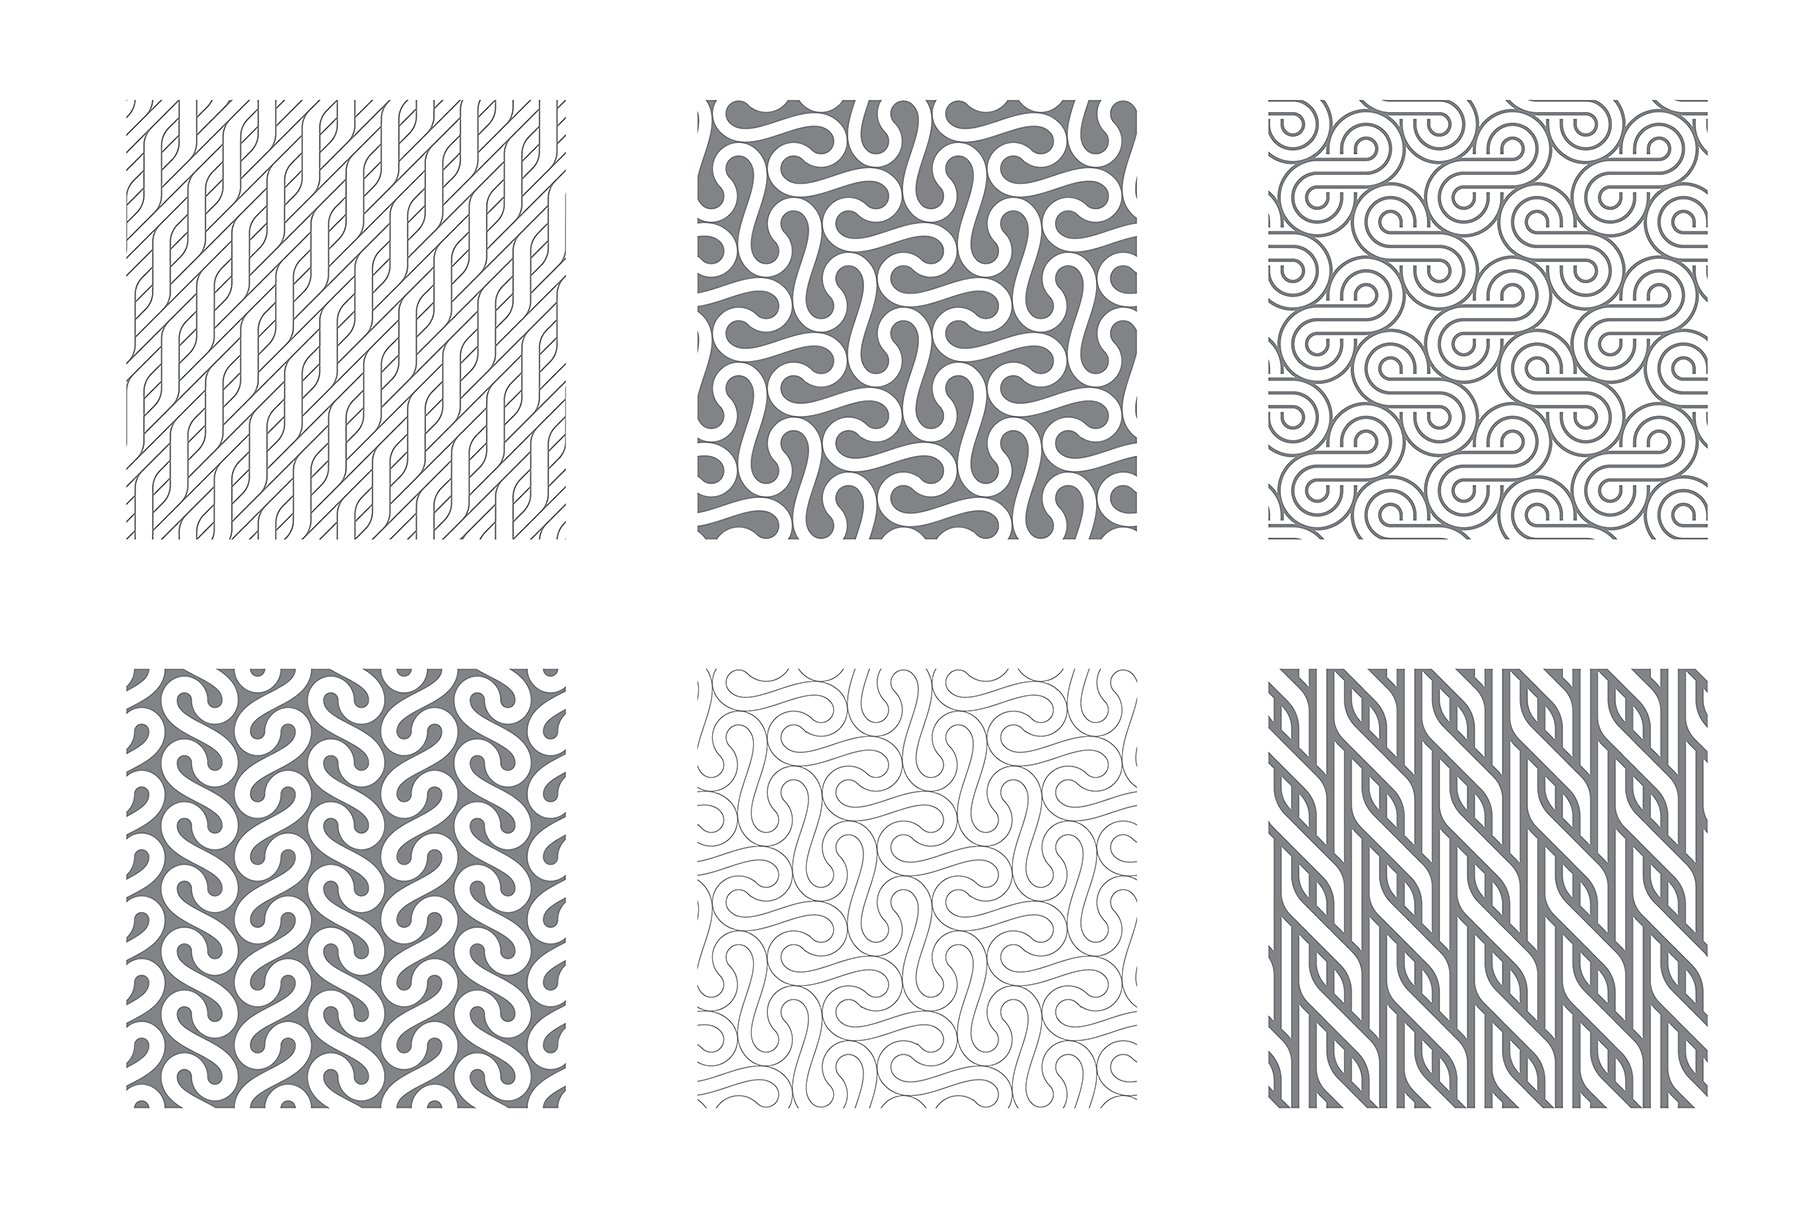 各种波纹无缝纹理图案素材 Rippled Seamless Patterns Bundle v.2插图(2)